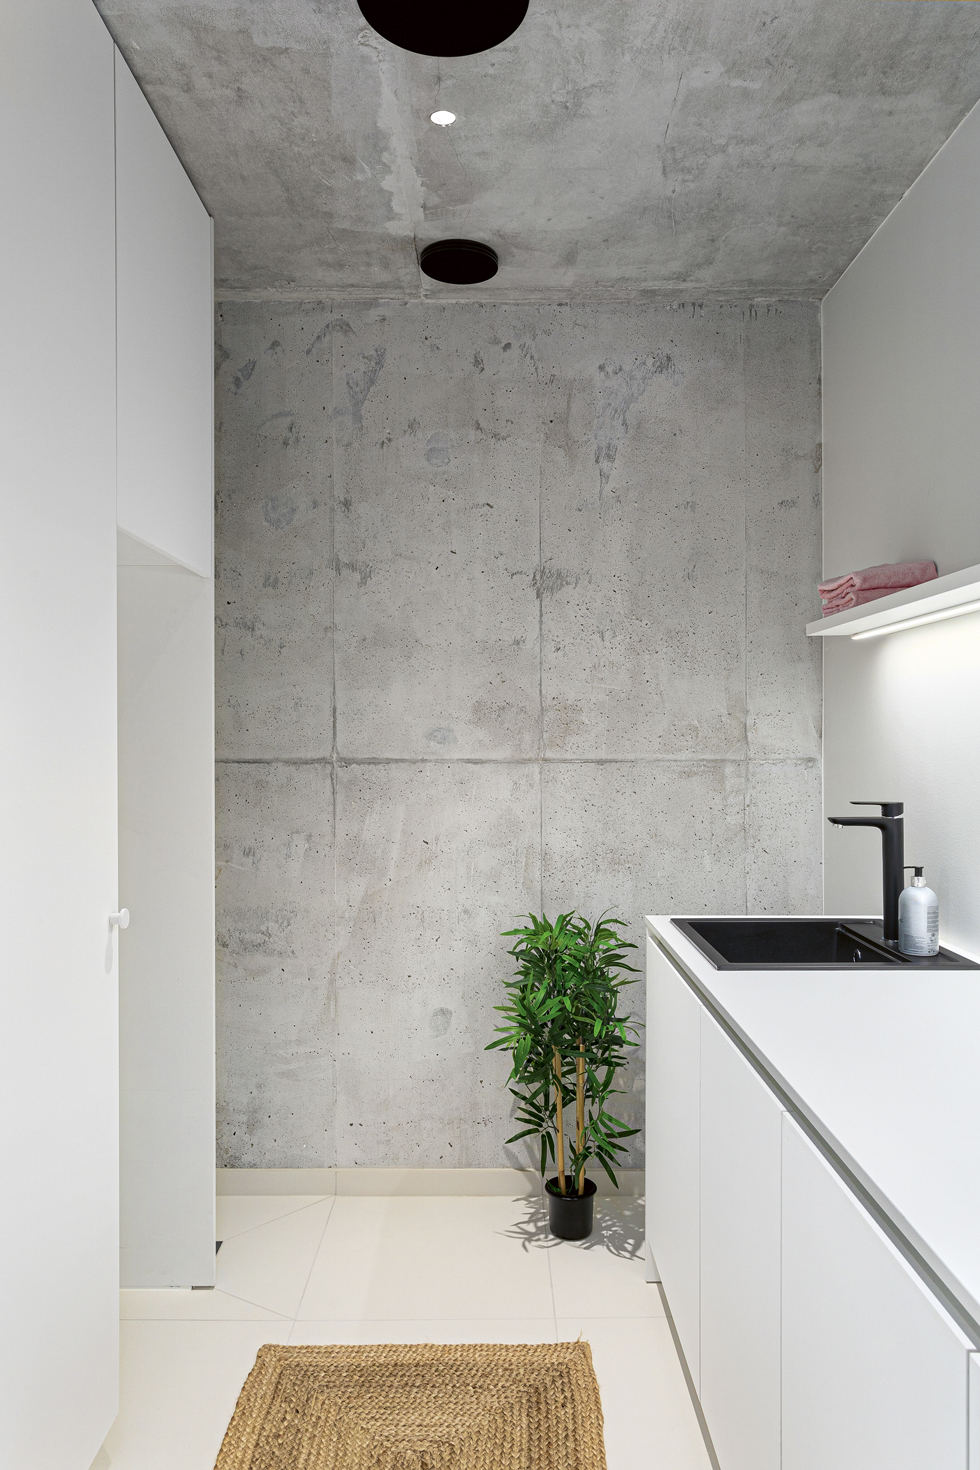 Paikallavaletutu betonipinnat ovat näkyvissä myös kylpyhuone- ja kodinhoitotiloissa.